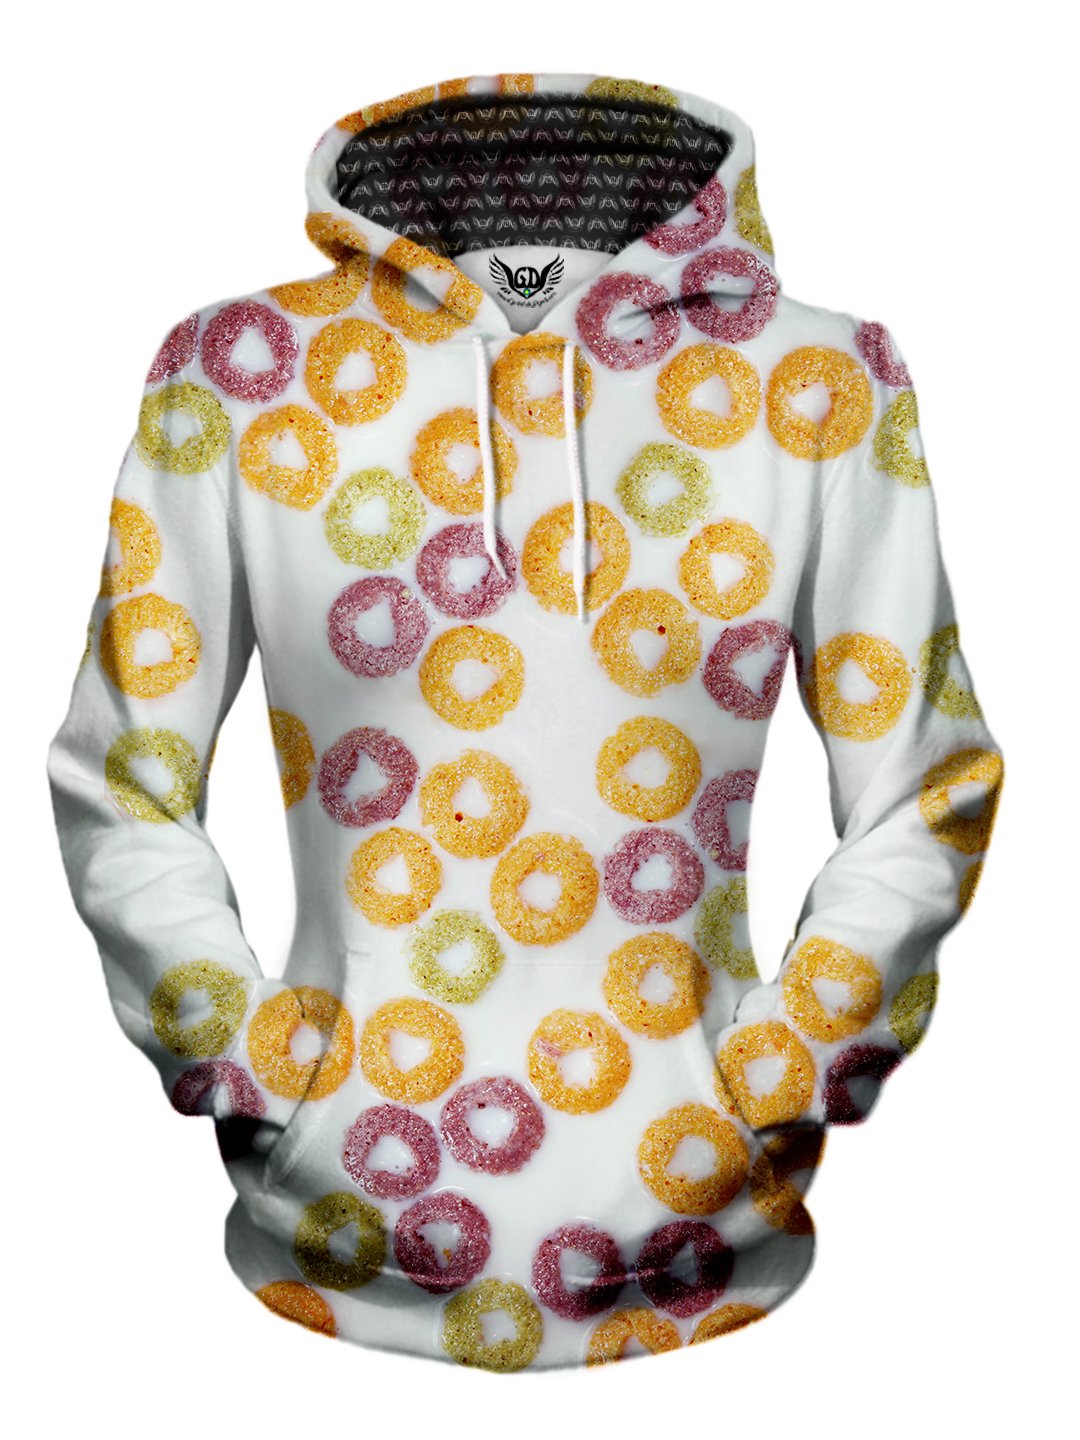 womens foodie hoodie - fruit loops cereal